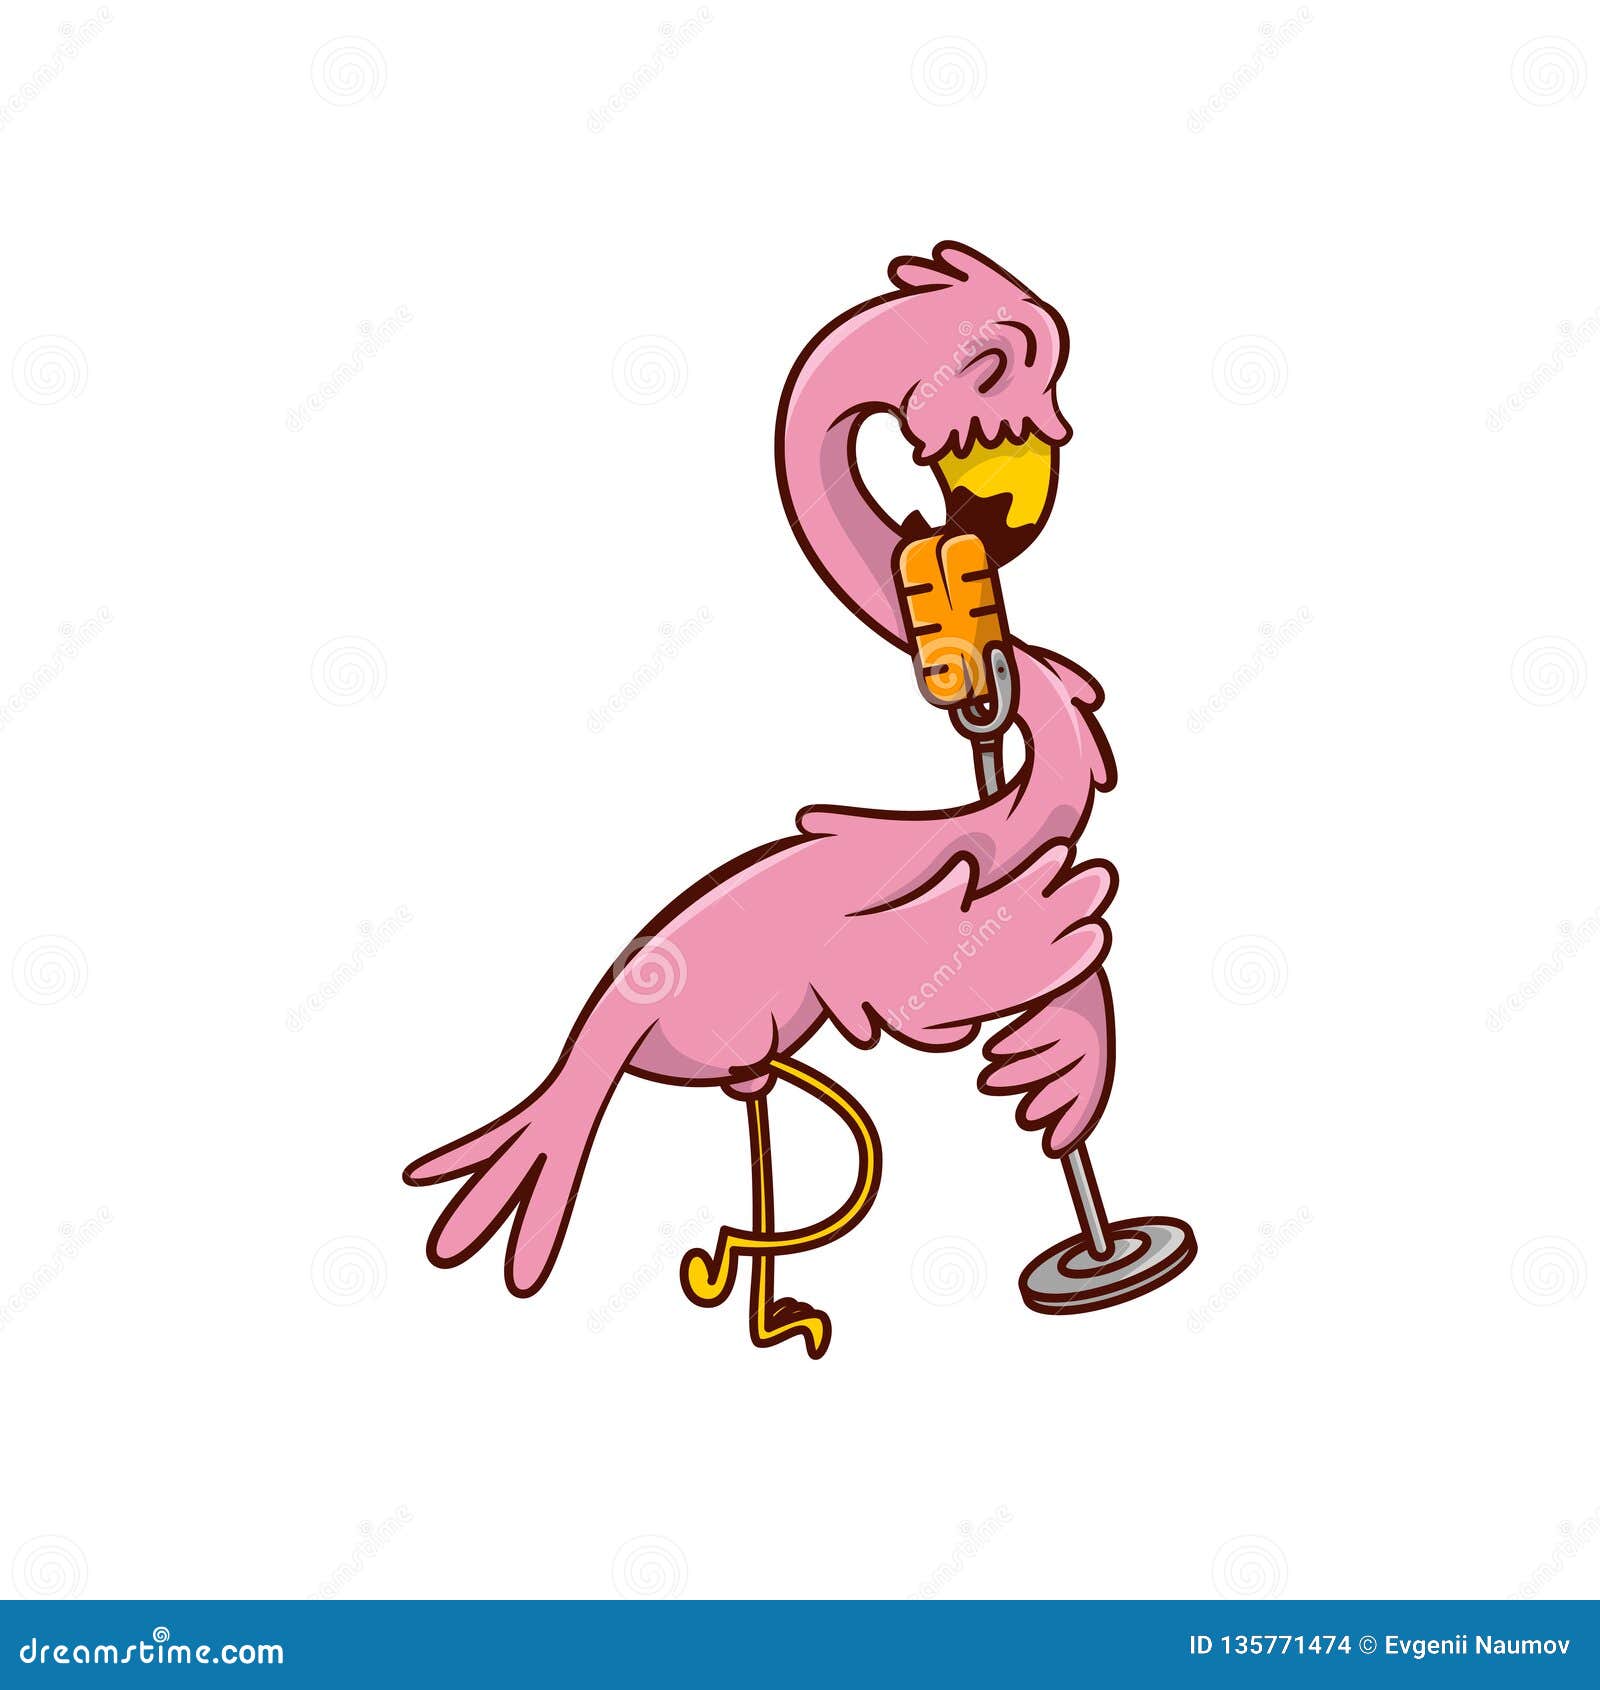 Flamingo Despacito Roblox Song Id